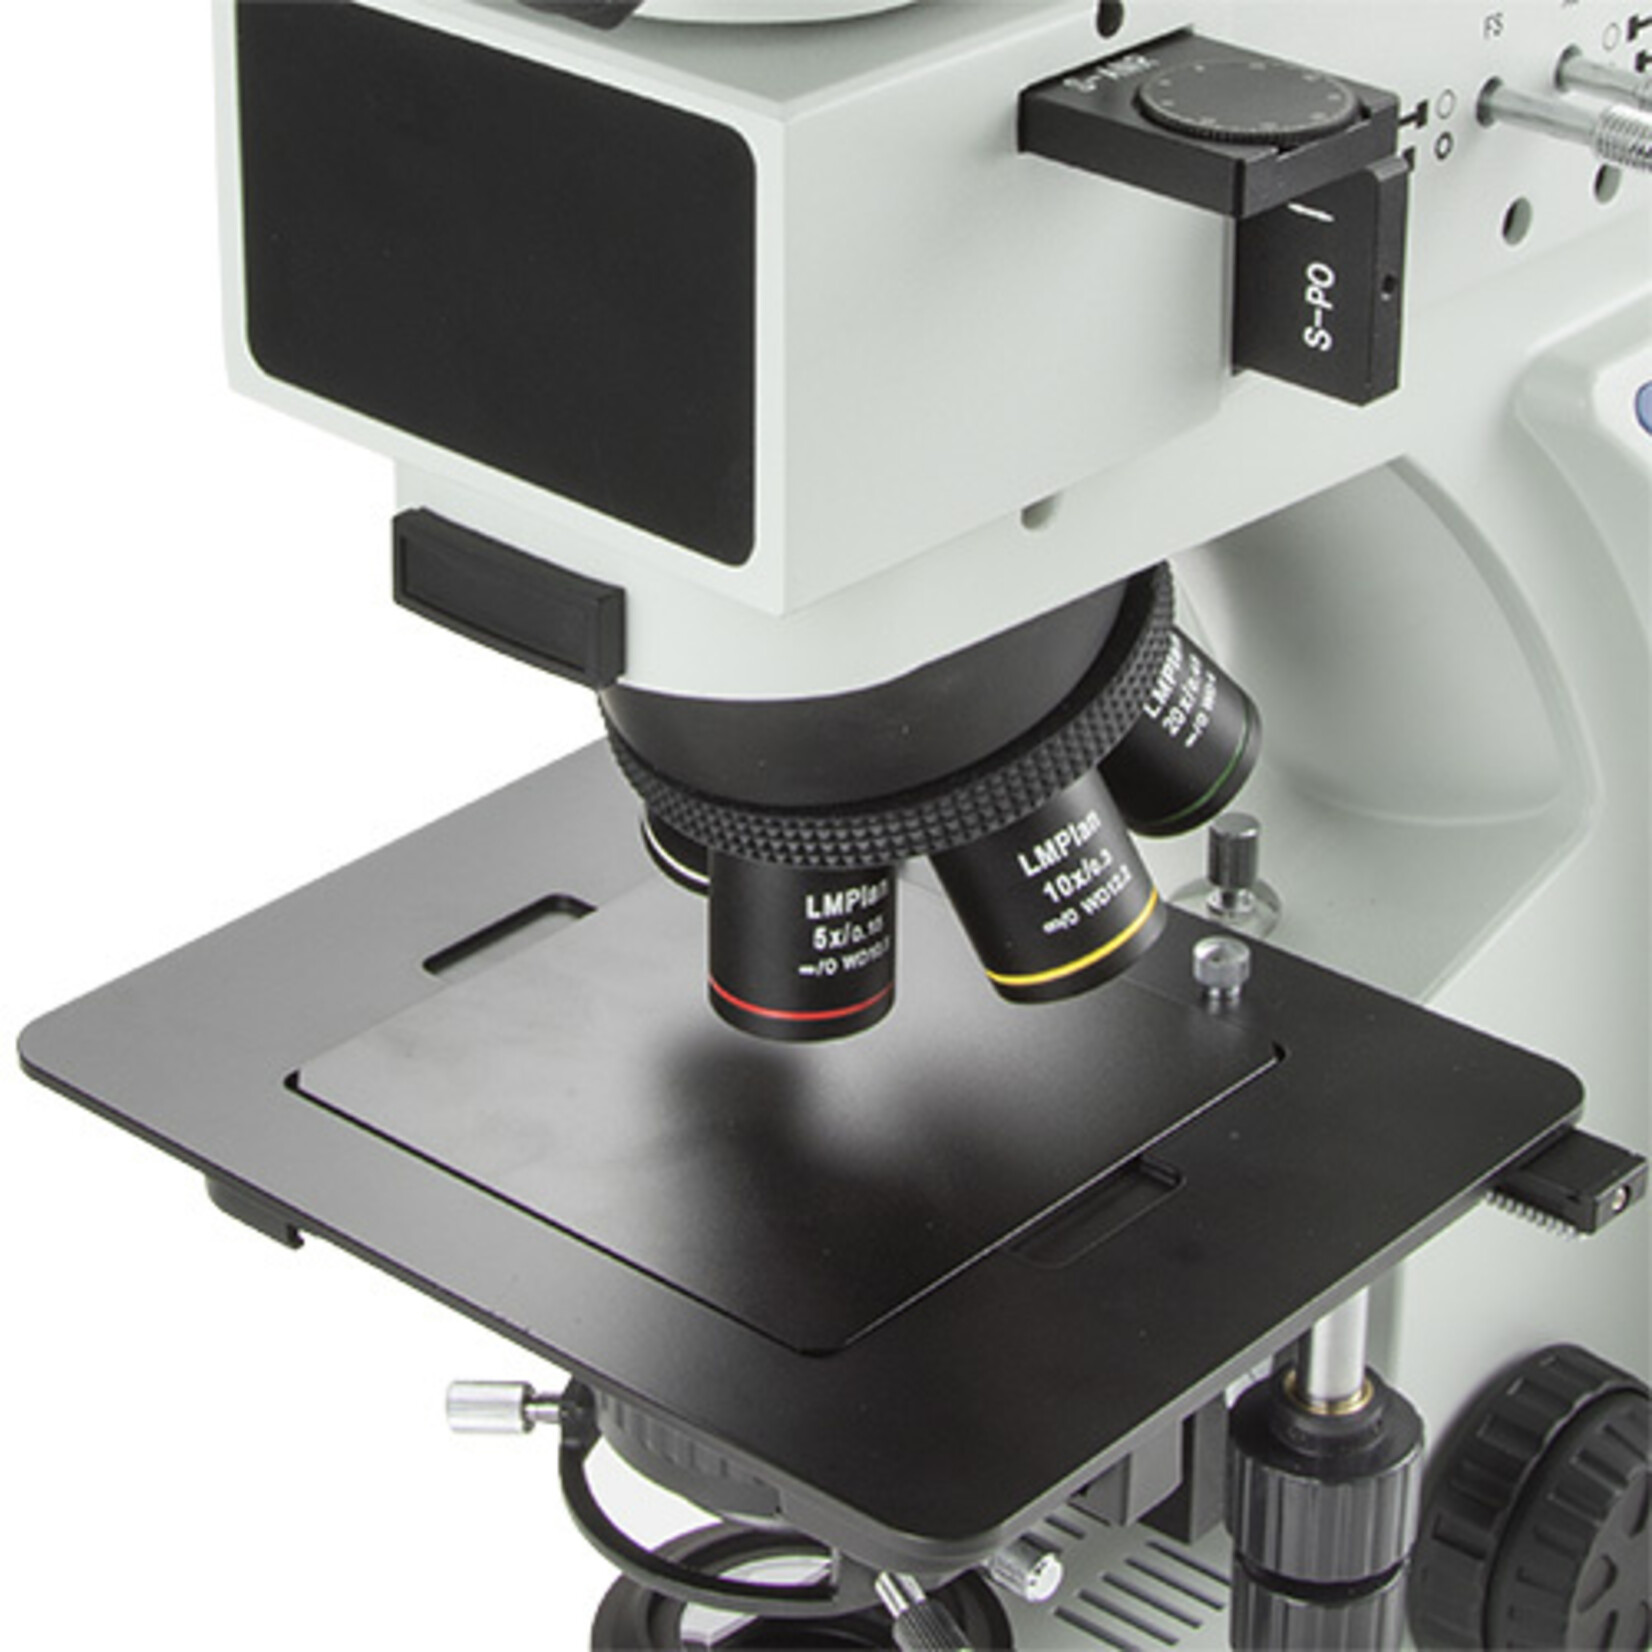 Microscopio industriale Oxion per micrografie